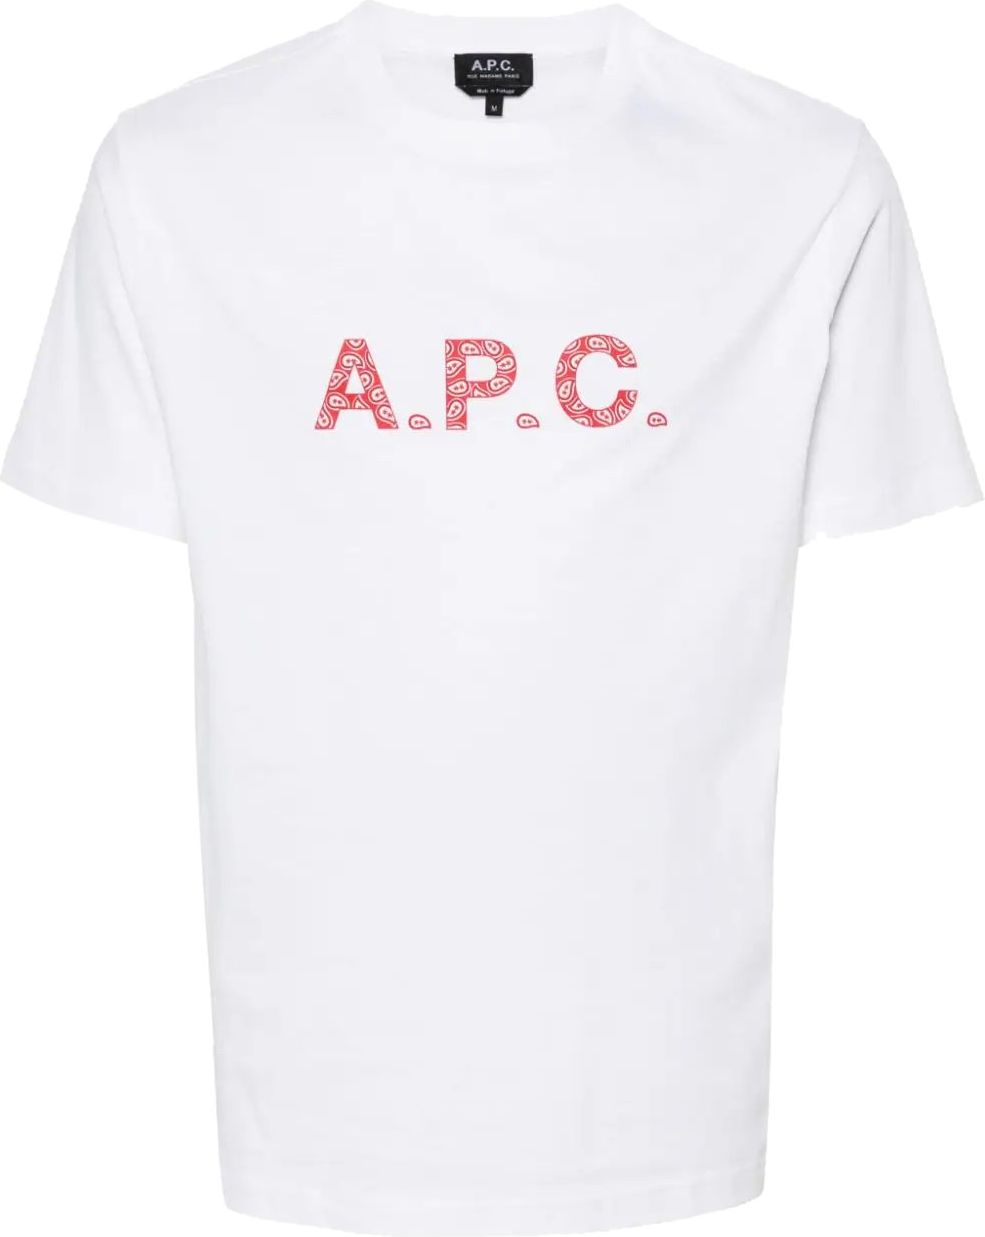 A.P.C. t-shirt james white Wit